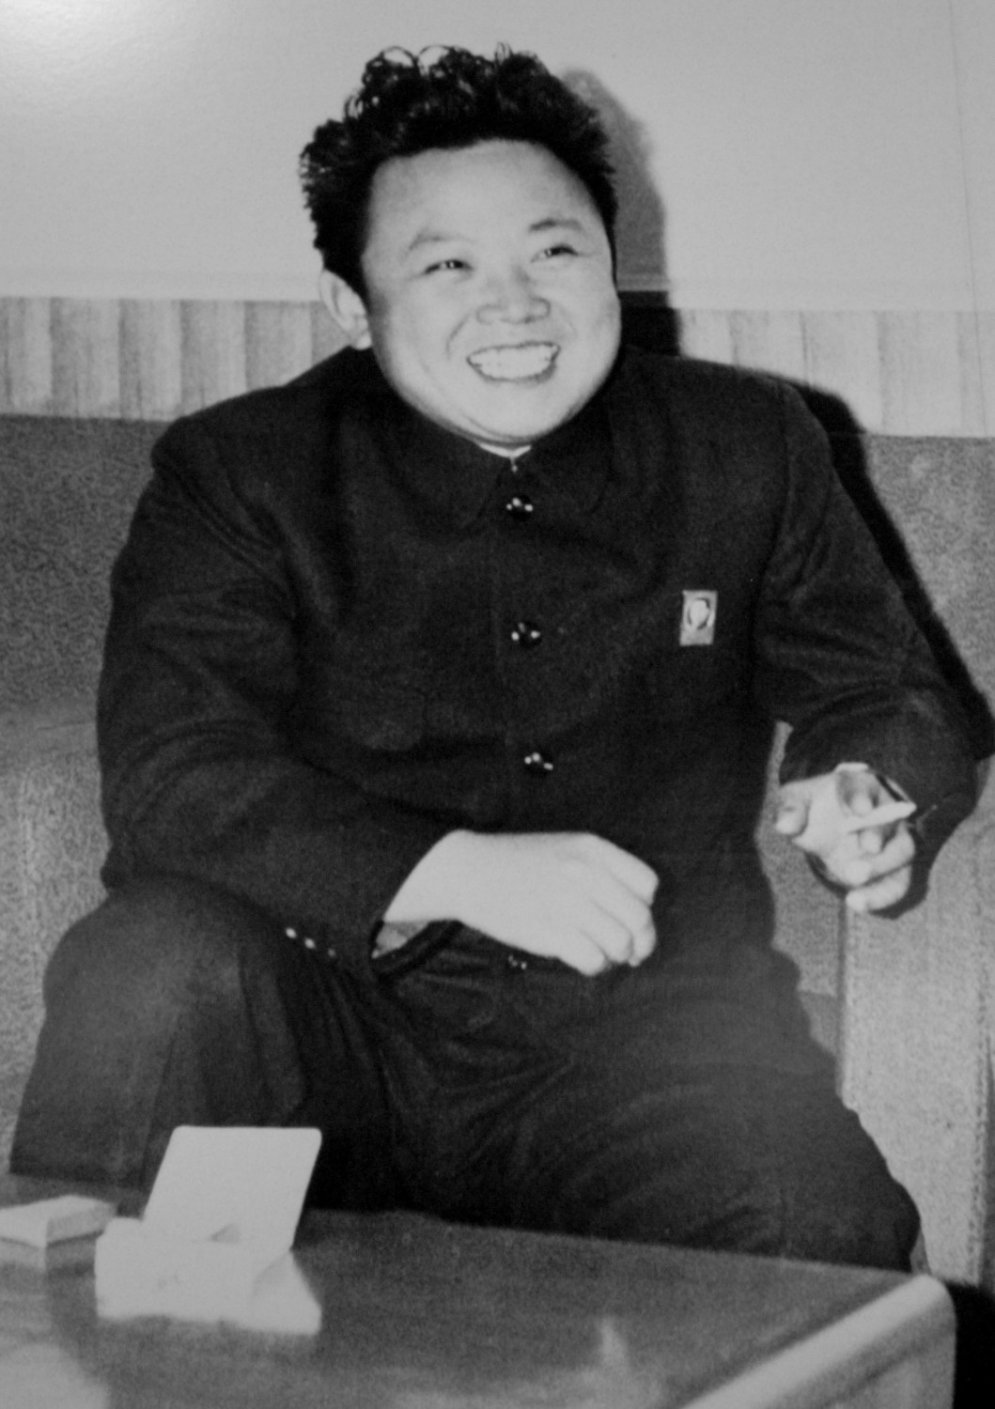 Pirms 75 gadiem piedzima vislabākais cilvēks pasaulē - Kims Čenirs